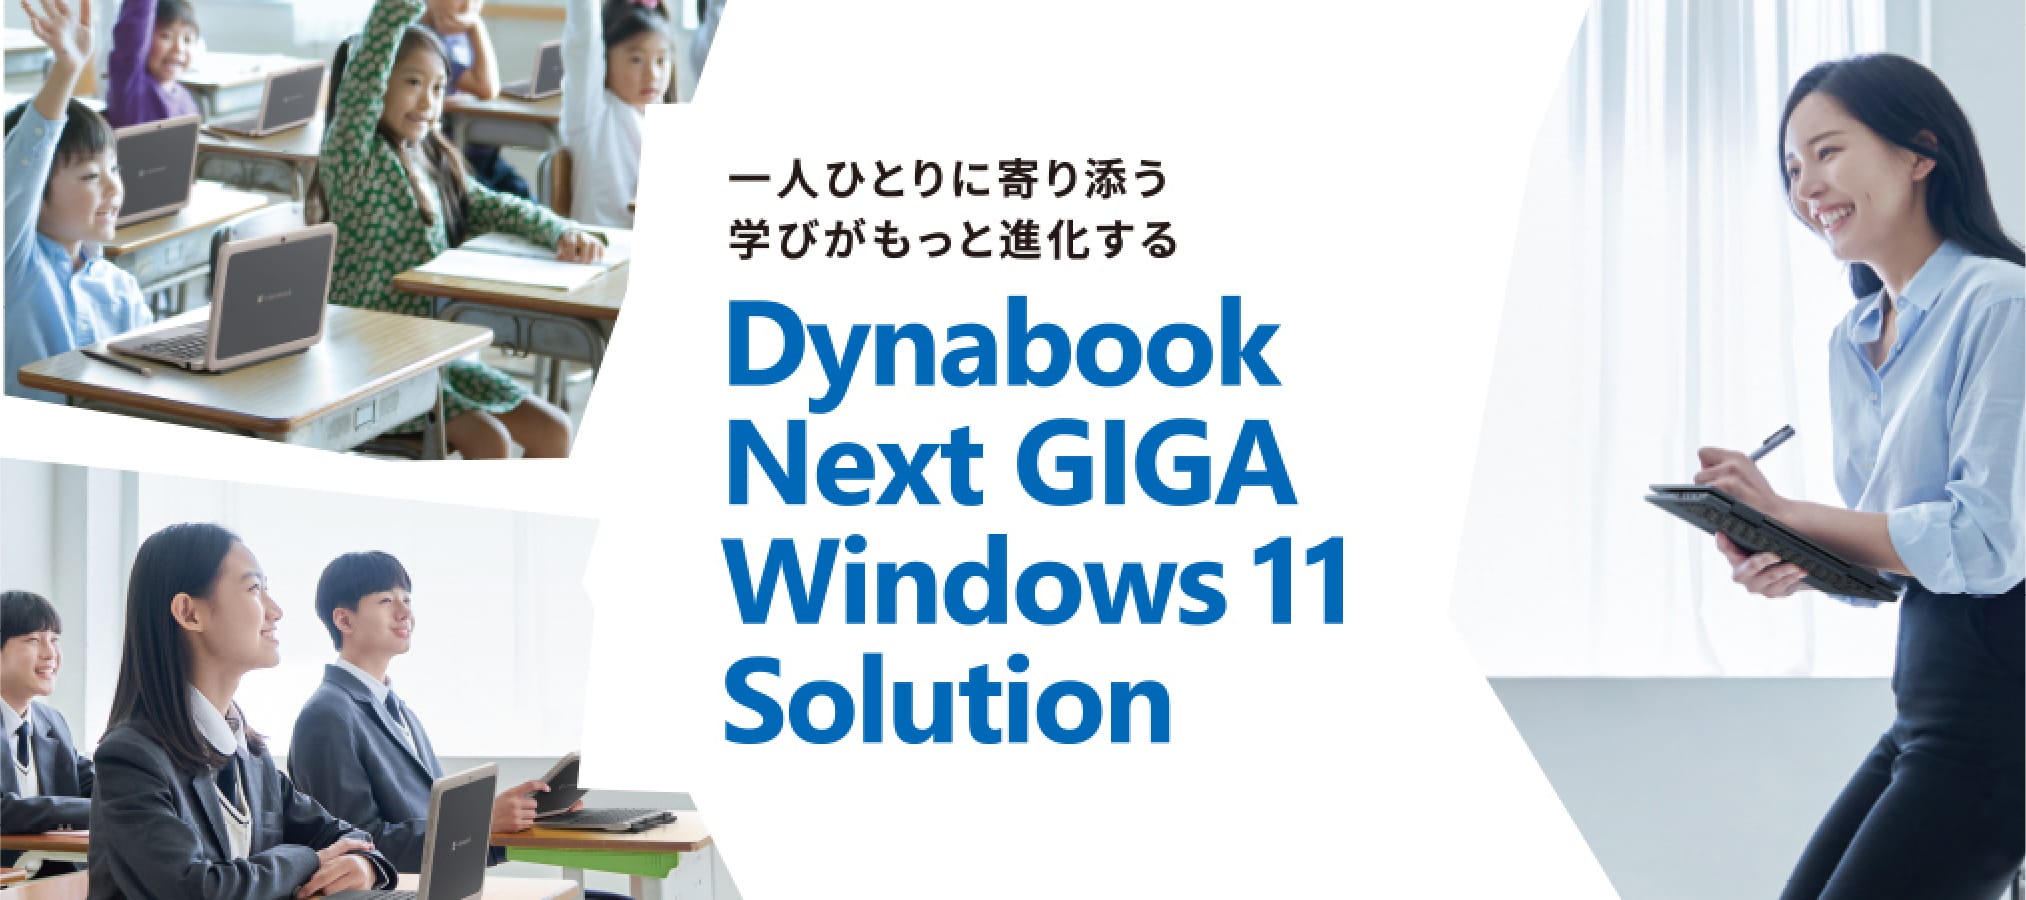 一人ひとりに寄り添う 学びがもっと進化する Dynabook Next GIGA Windows11 Solution™ Elements Endpoint Protection, Computers Edition 以下 WithSecure Elements EPP for Computers